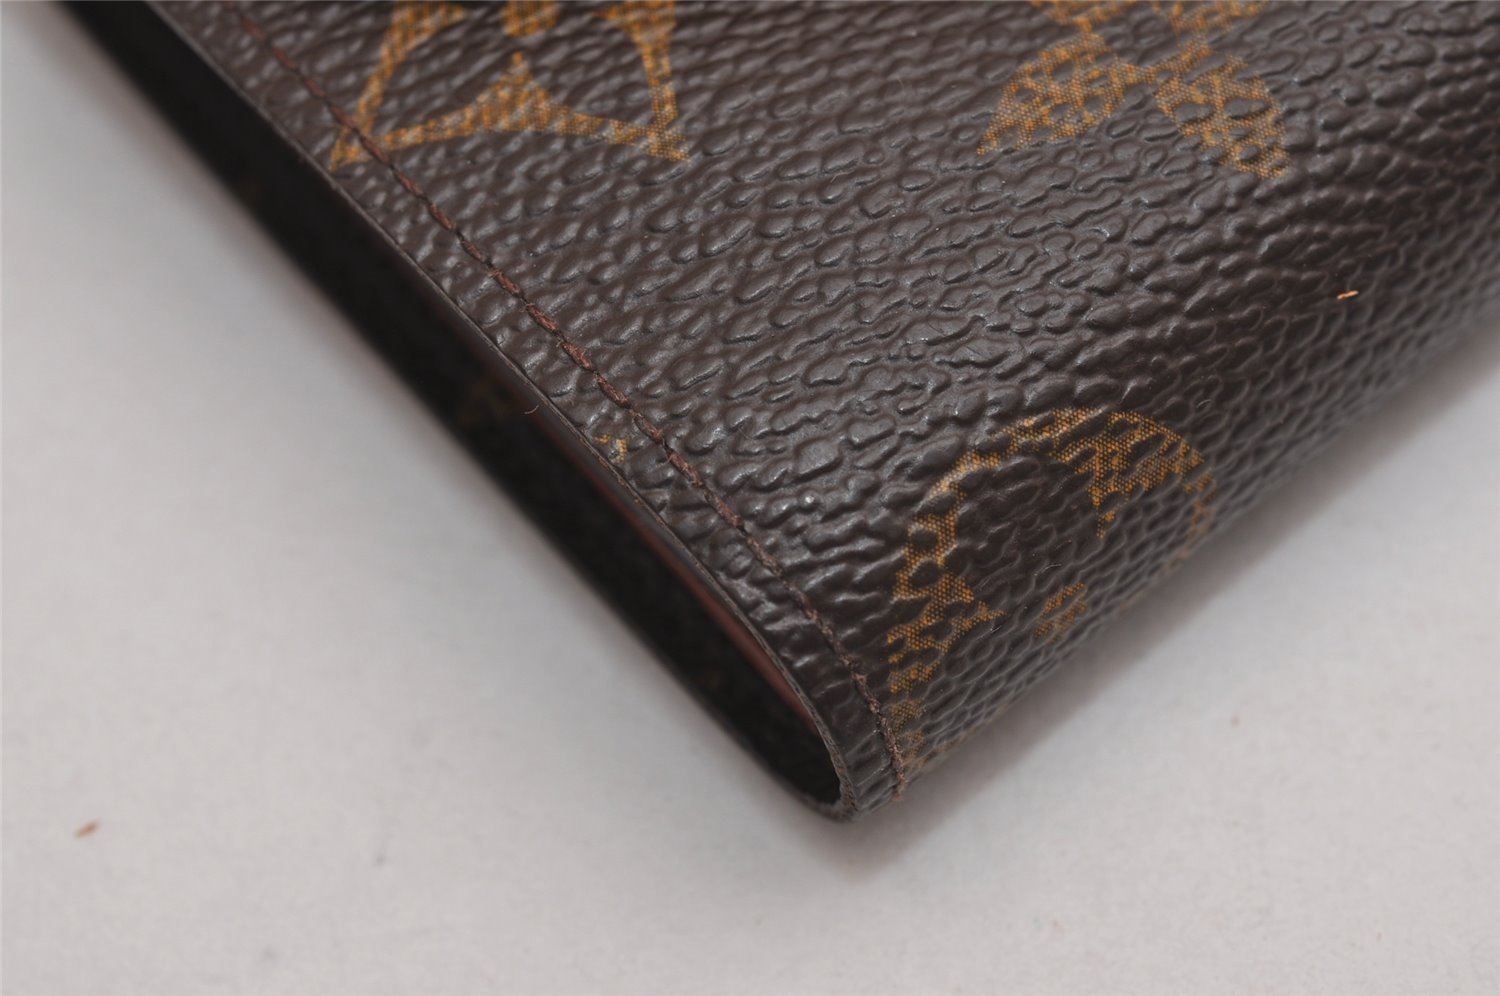 Authentic Louis Vuitton Monogram Portefeuille Helene M60253 Trifold Wallet 3461J